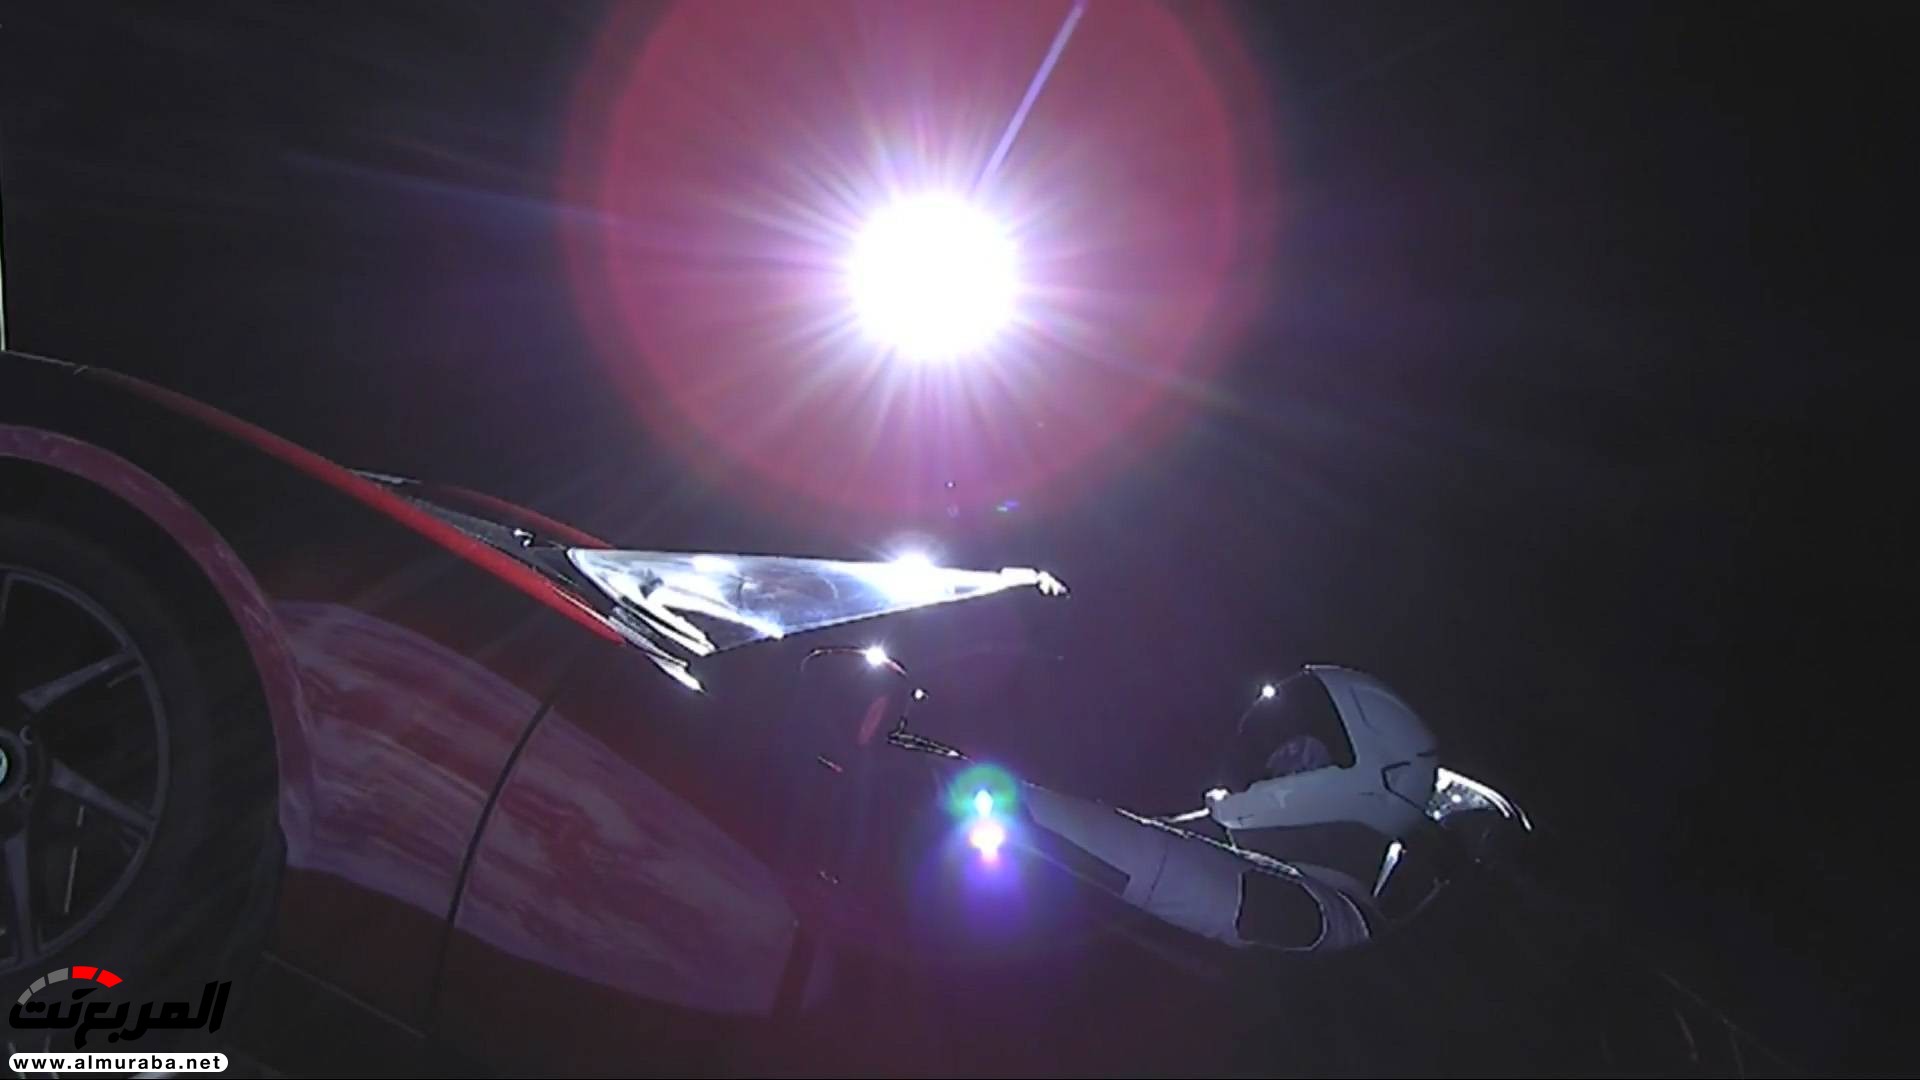 "بالفيديو والصور" إيلون ماسك يطلق تيسلا رودستر إلى المريخ في أقوى صاروخ بالعالم 41